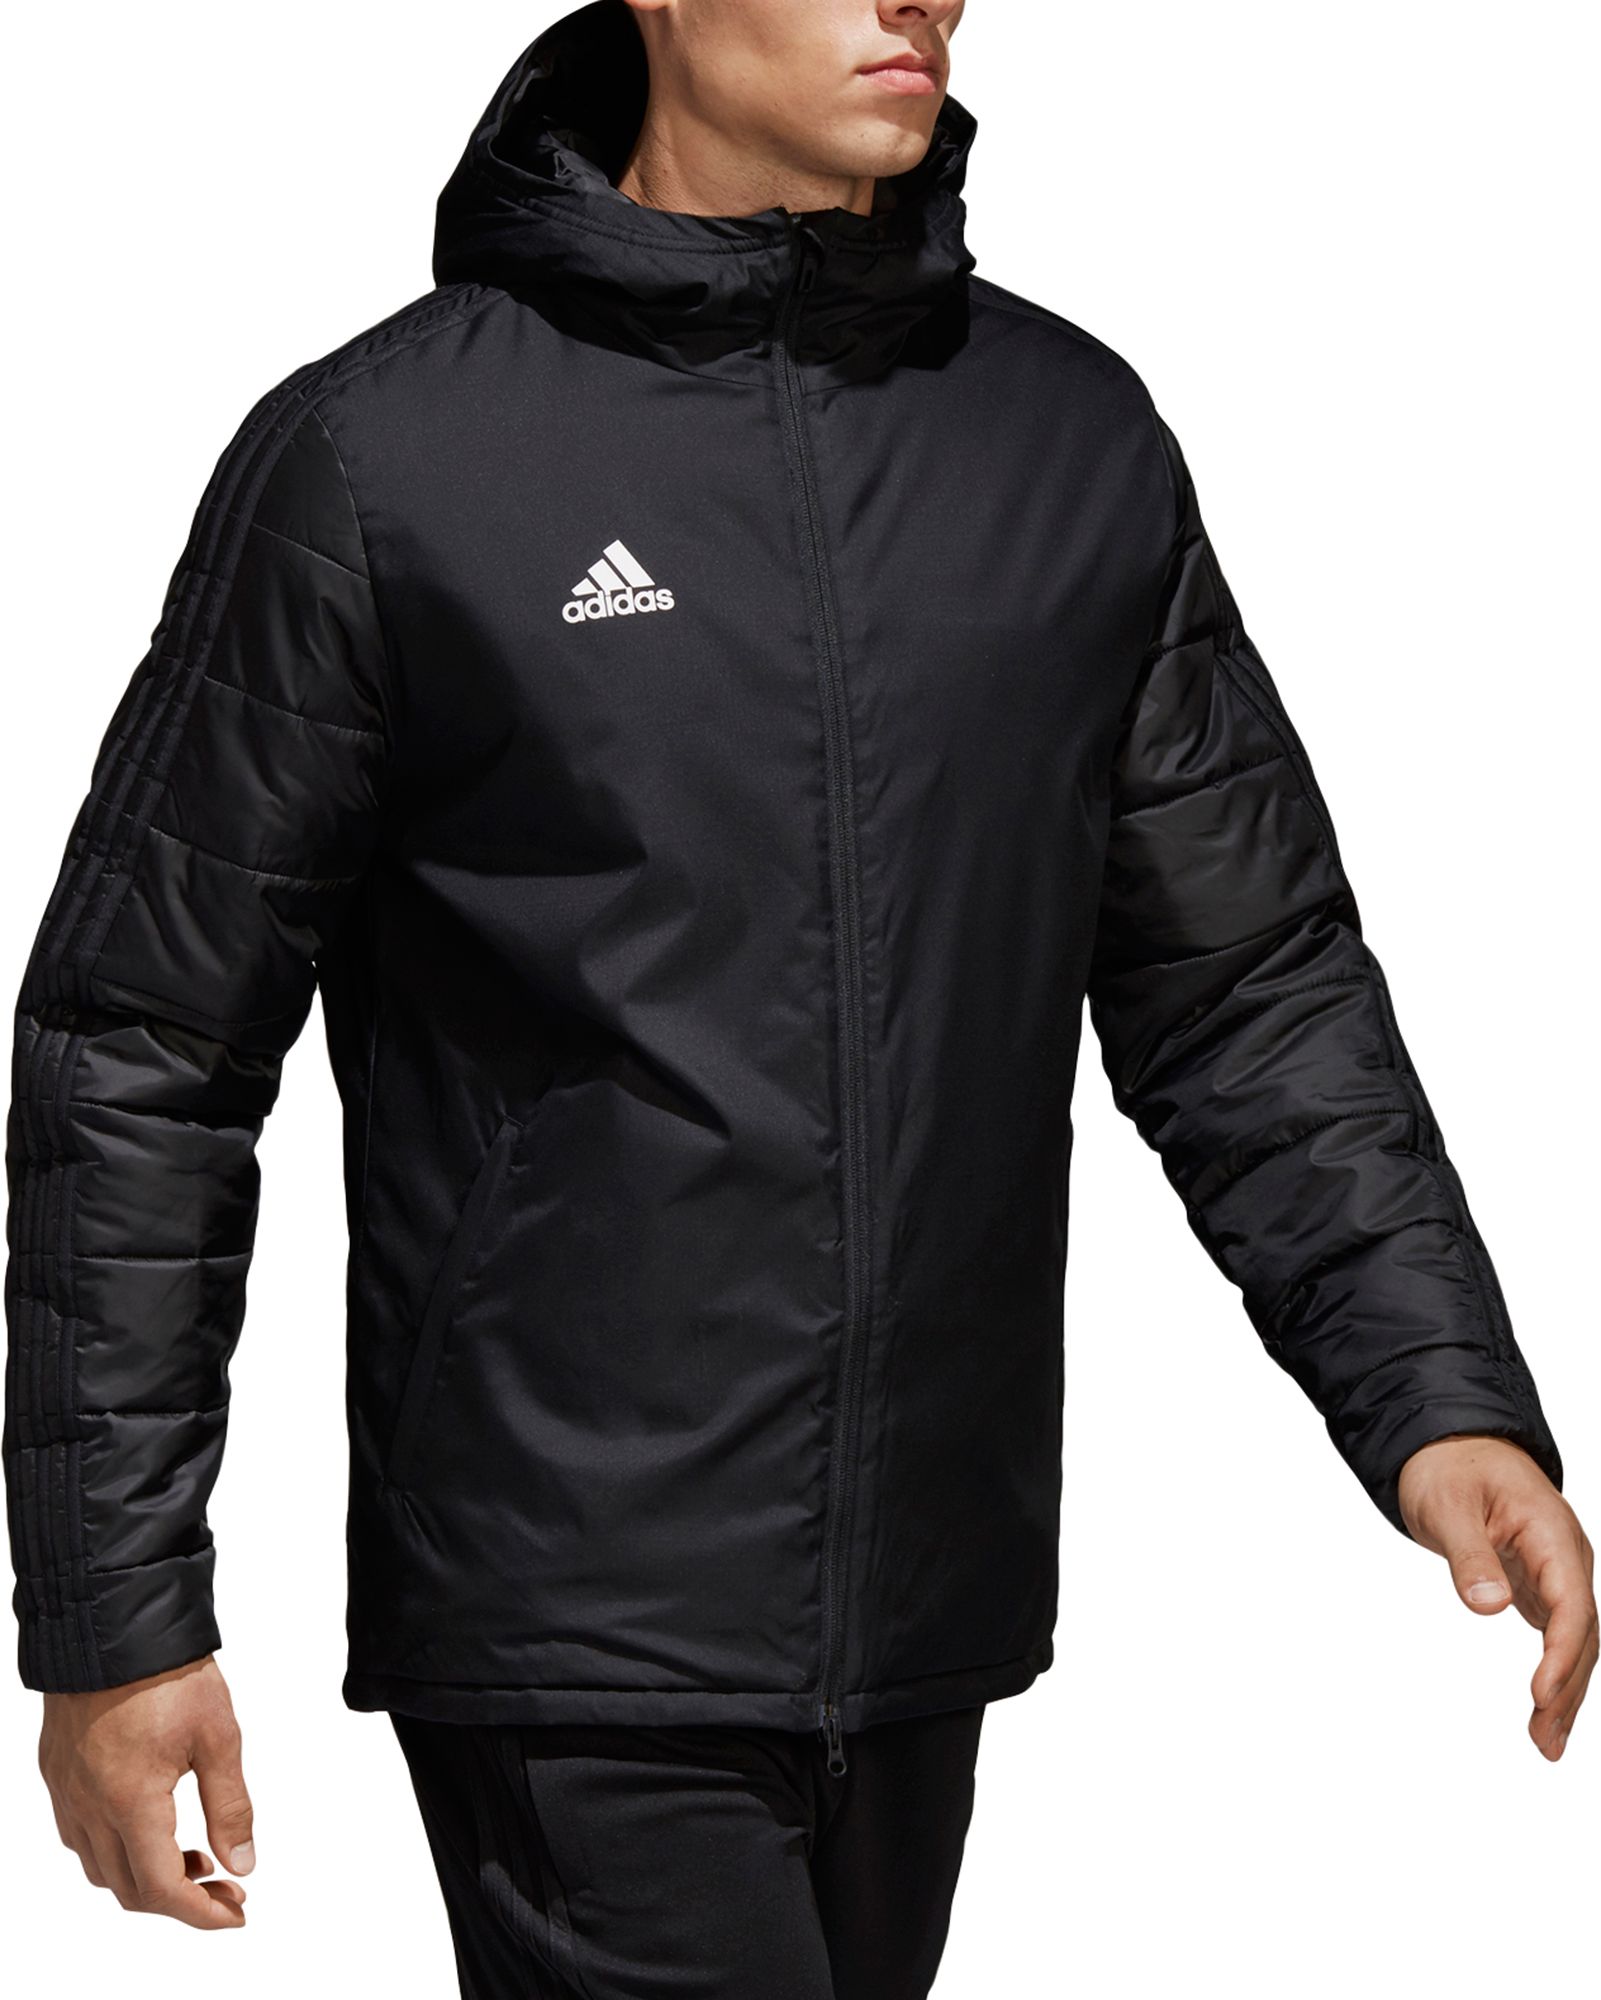 adidas men's soccer winter 18 jacket